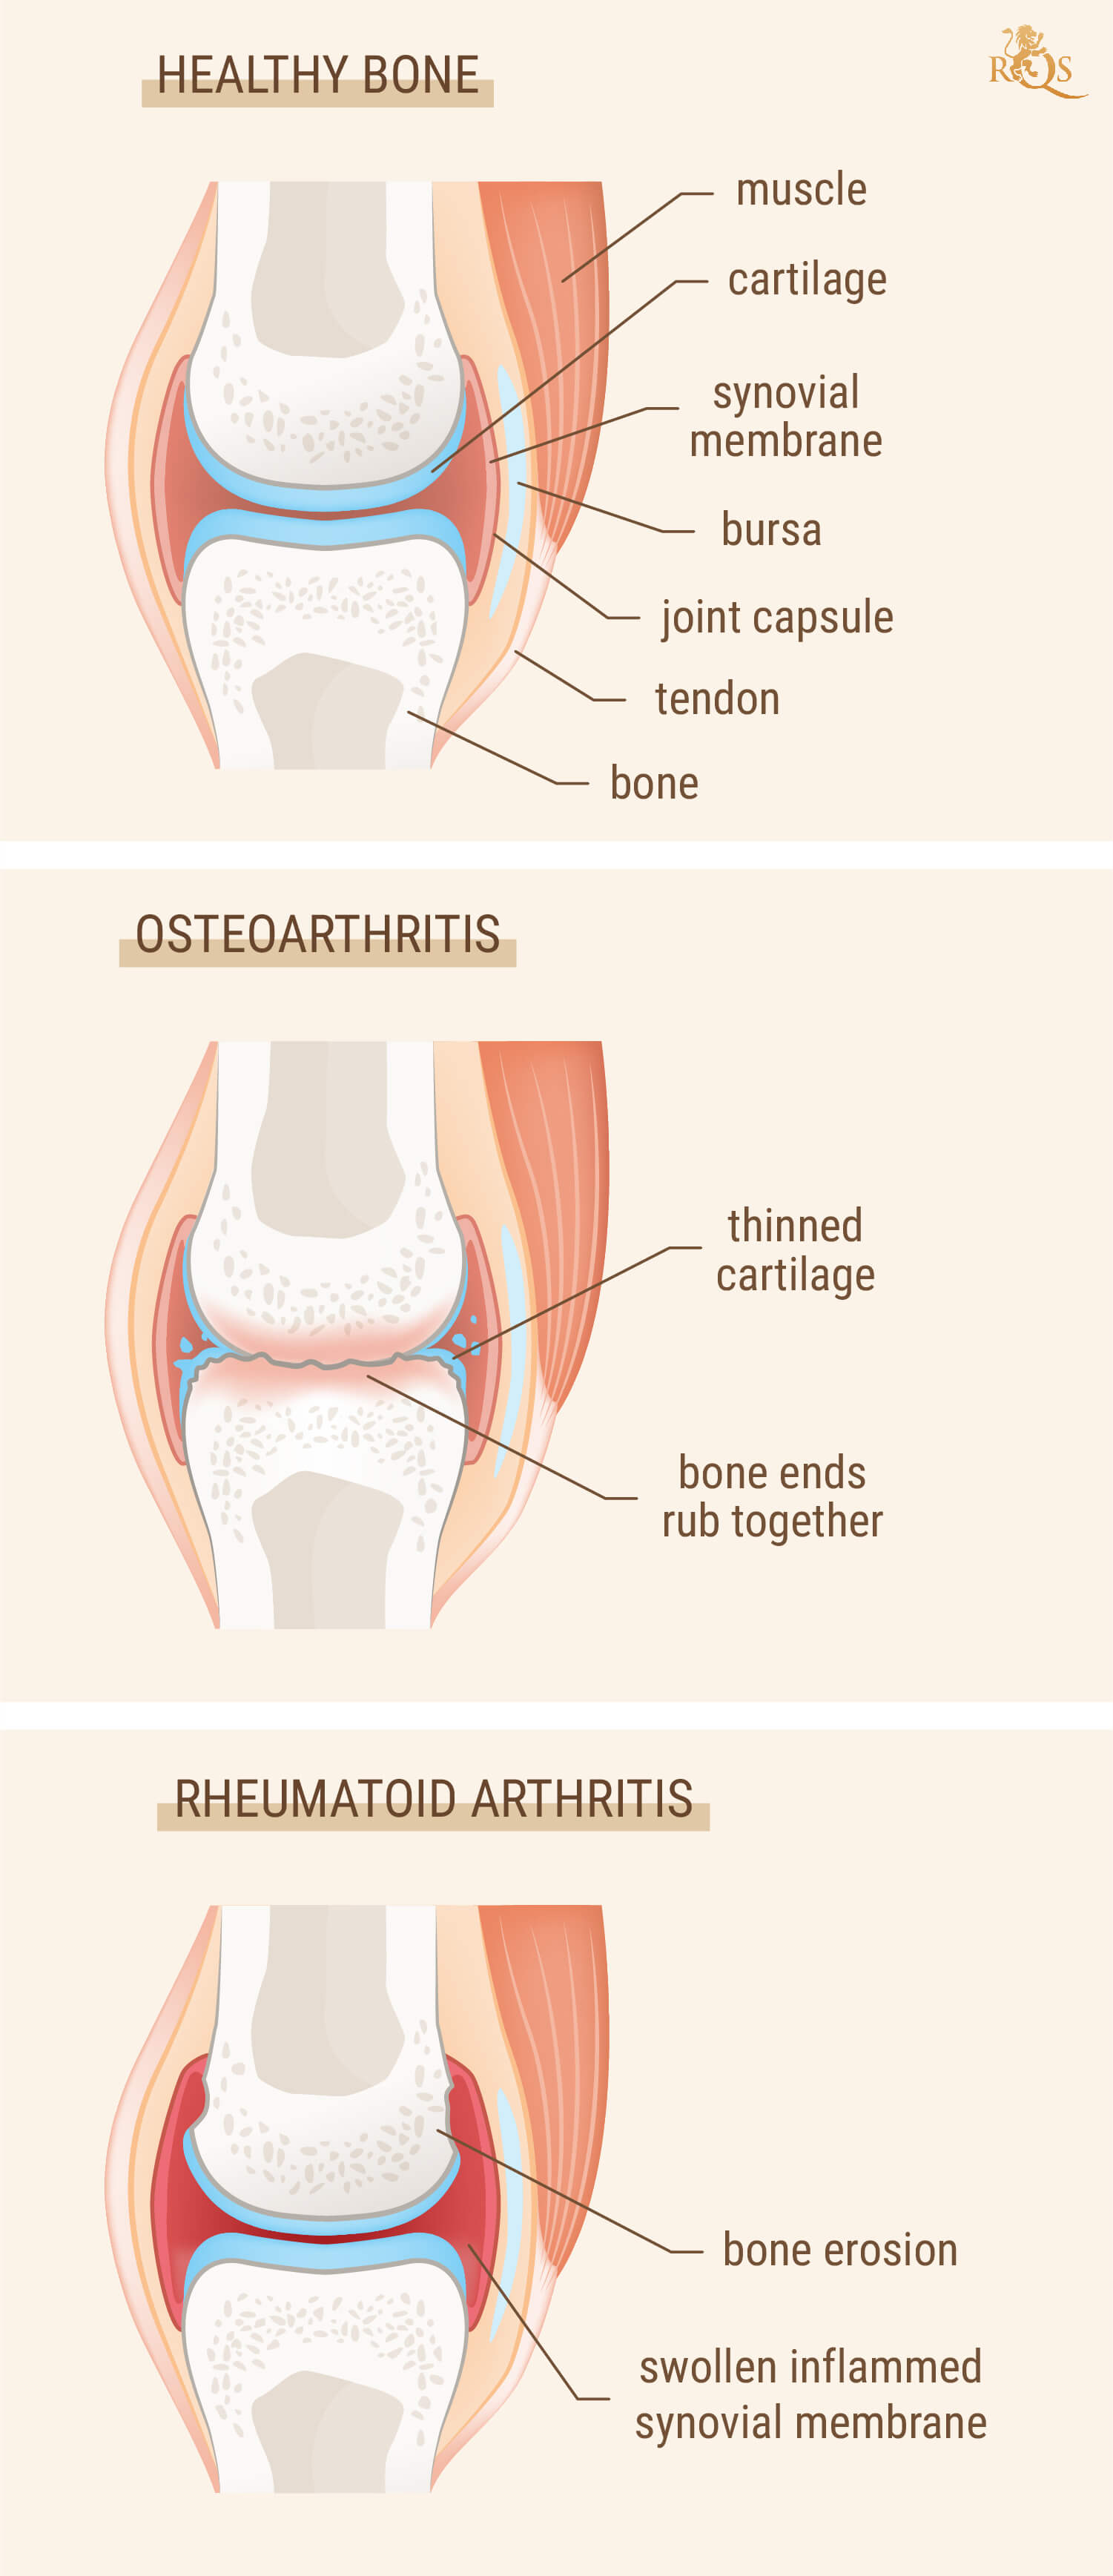 Zijn artritis en reuma hetzelfde?